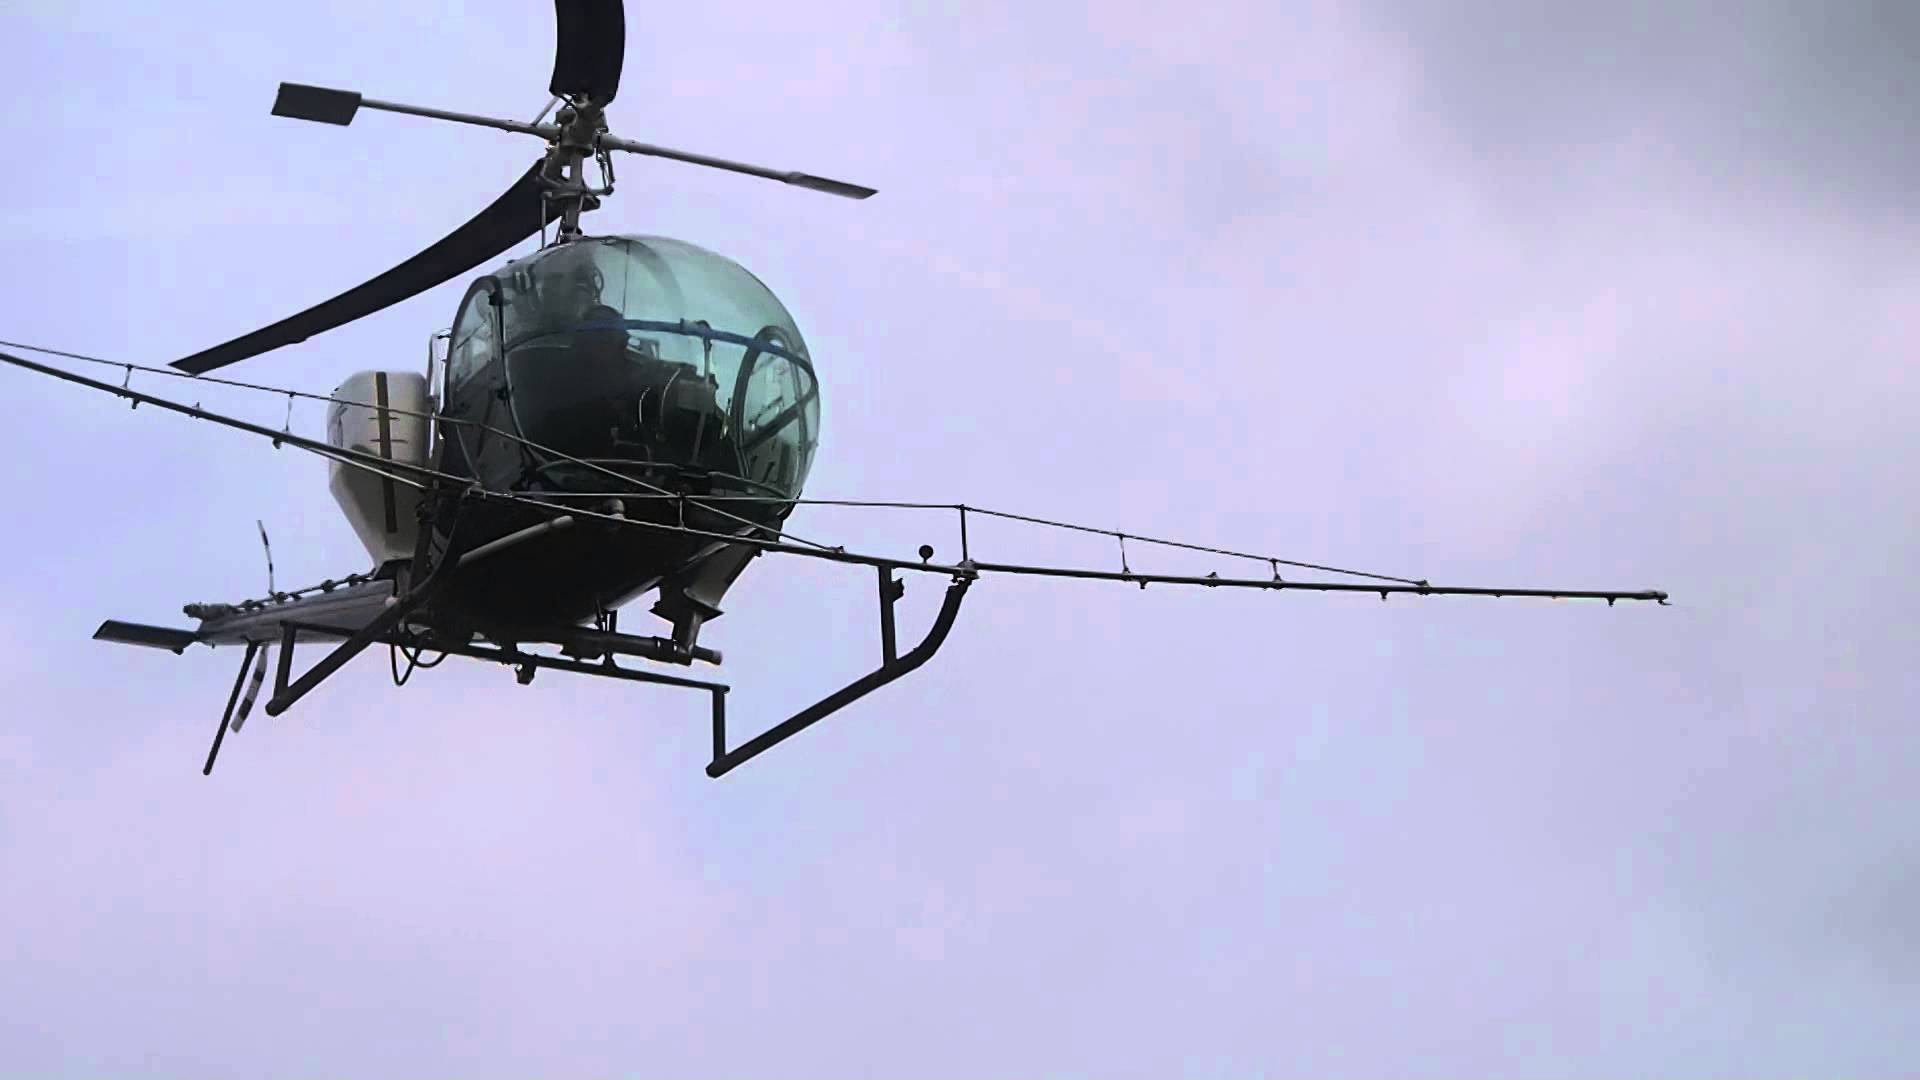 Πτώση ψεκαστικού ελικοπτέρου στον Σχοινιά με 2 νεκρούς – Η μοιραία πτήση μεταδιδόταν live στο facebook (βίντεο)